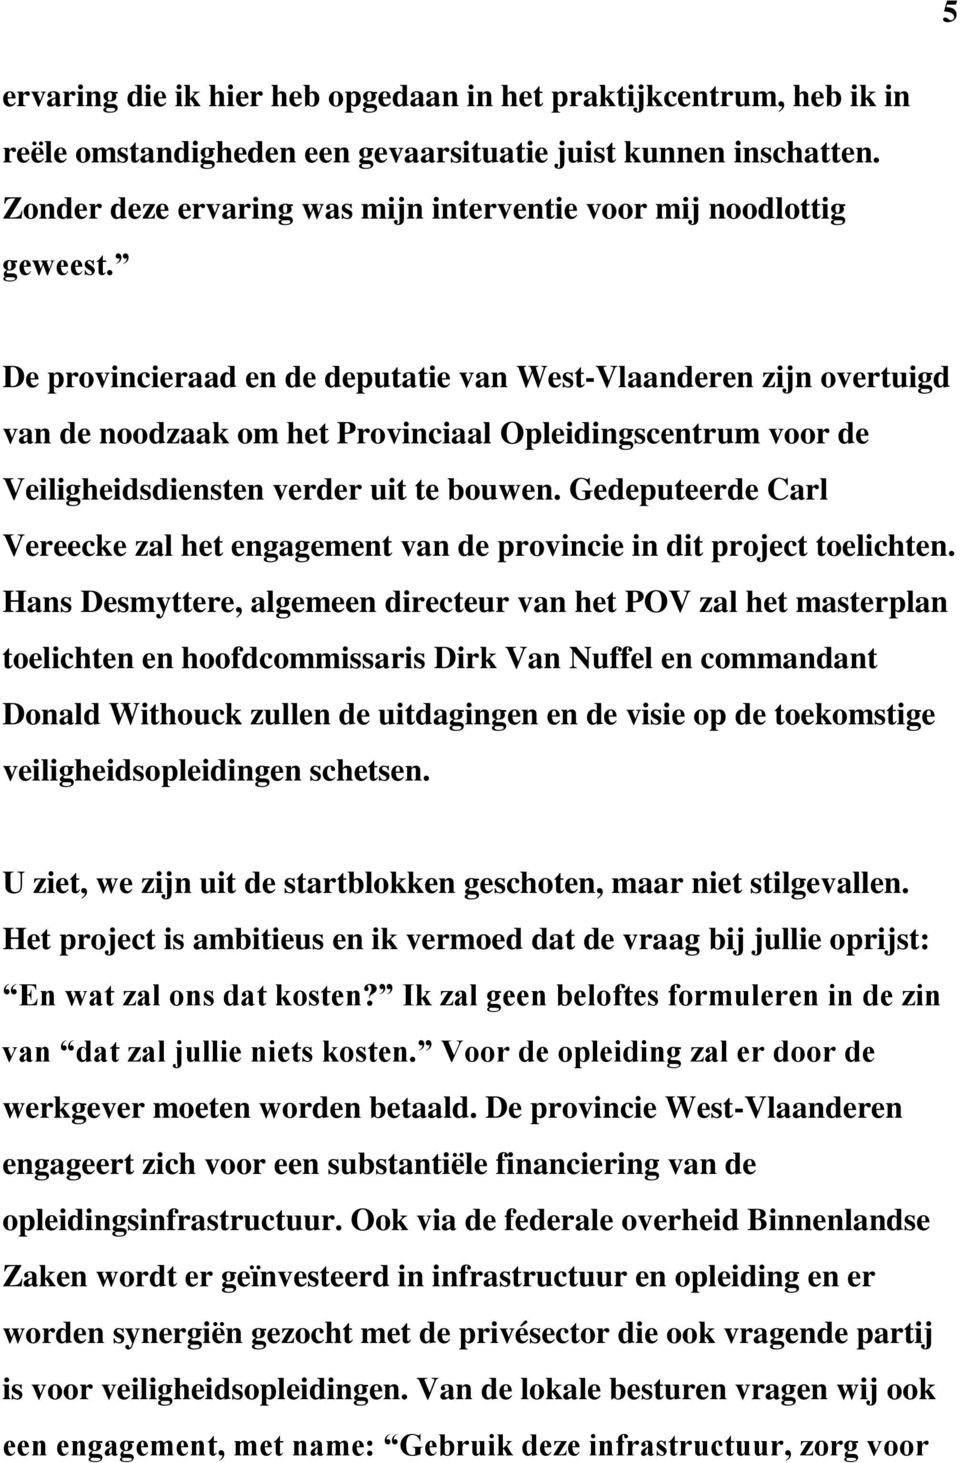 De provincieraad en de deputatie van West-Vlaanderen zijn overtuigd van de noodzaak om het Provinciaal Opleidingscentrum voor de Veiligheidsdiensten verder uit te bouwen.